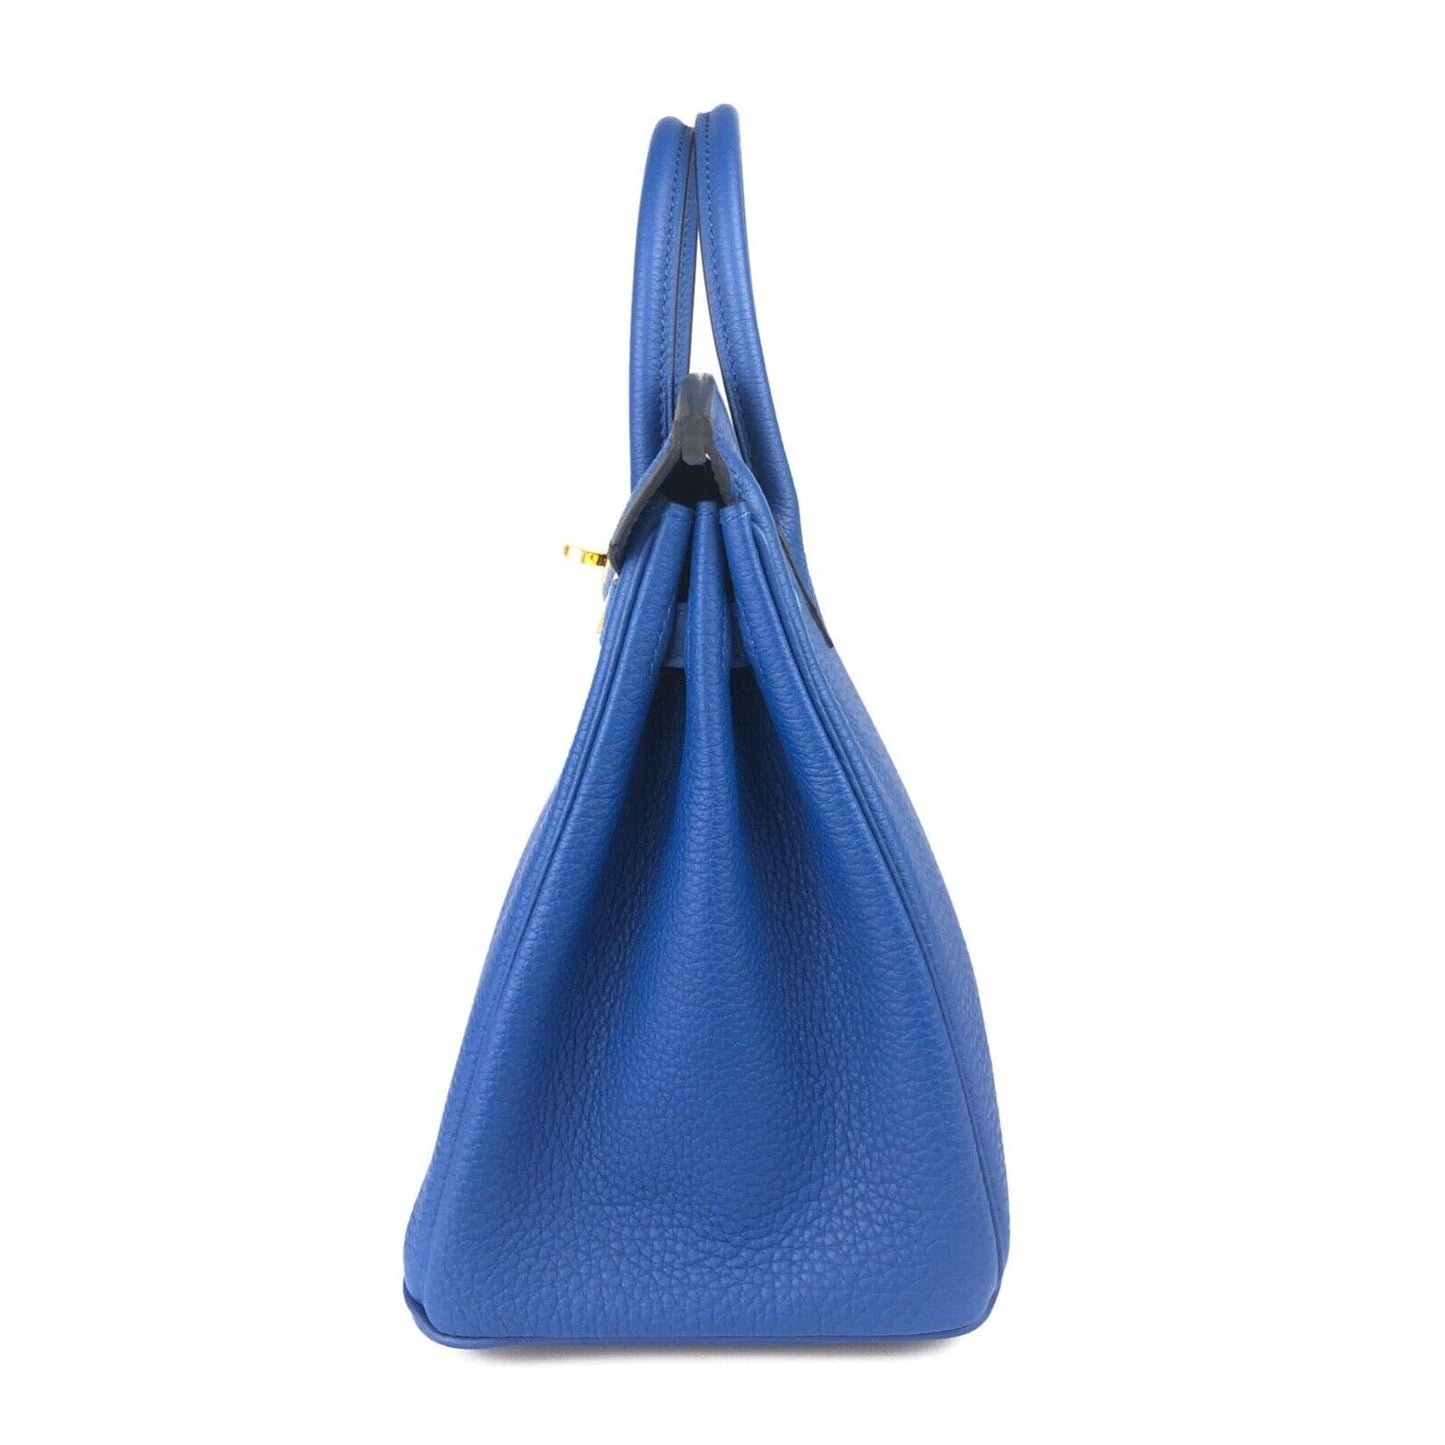 Hermes Birkin 25 Blue France Togo Leather Gold Hardware 2022 Handbag